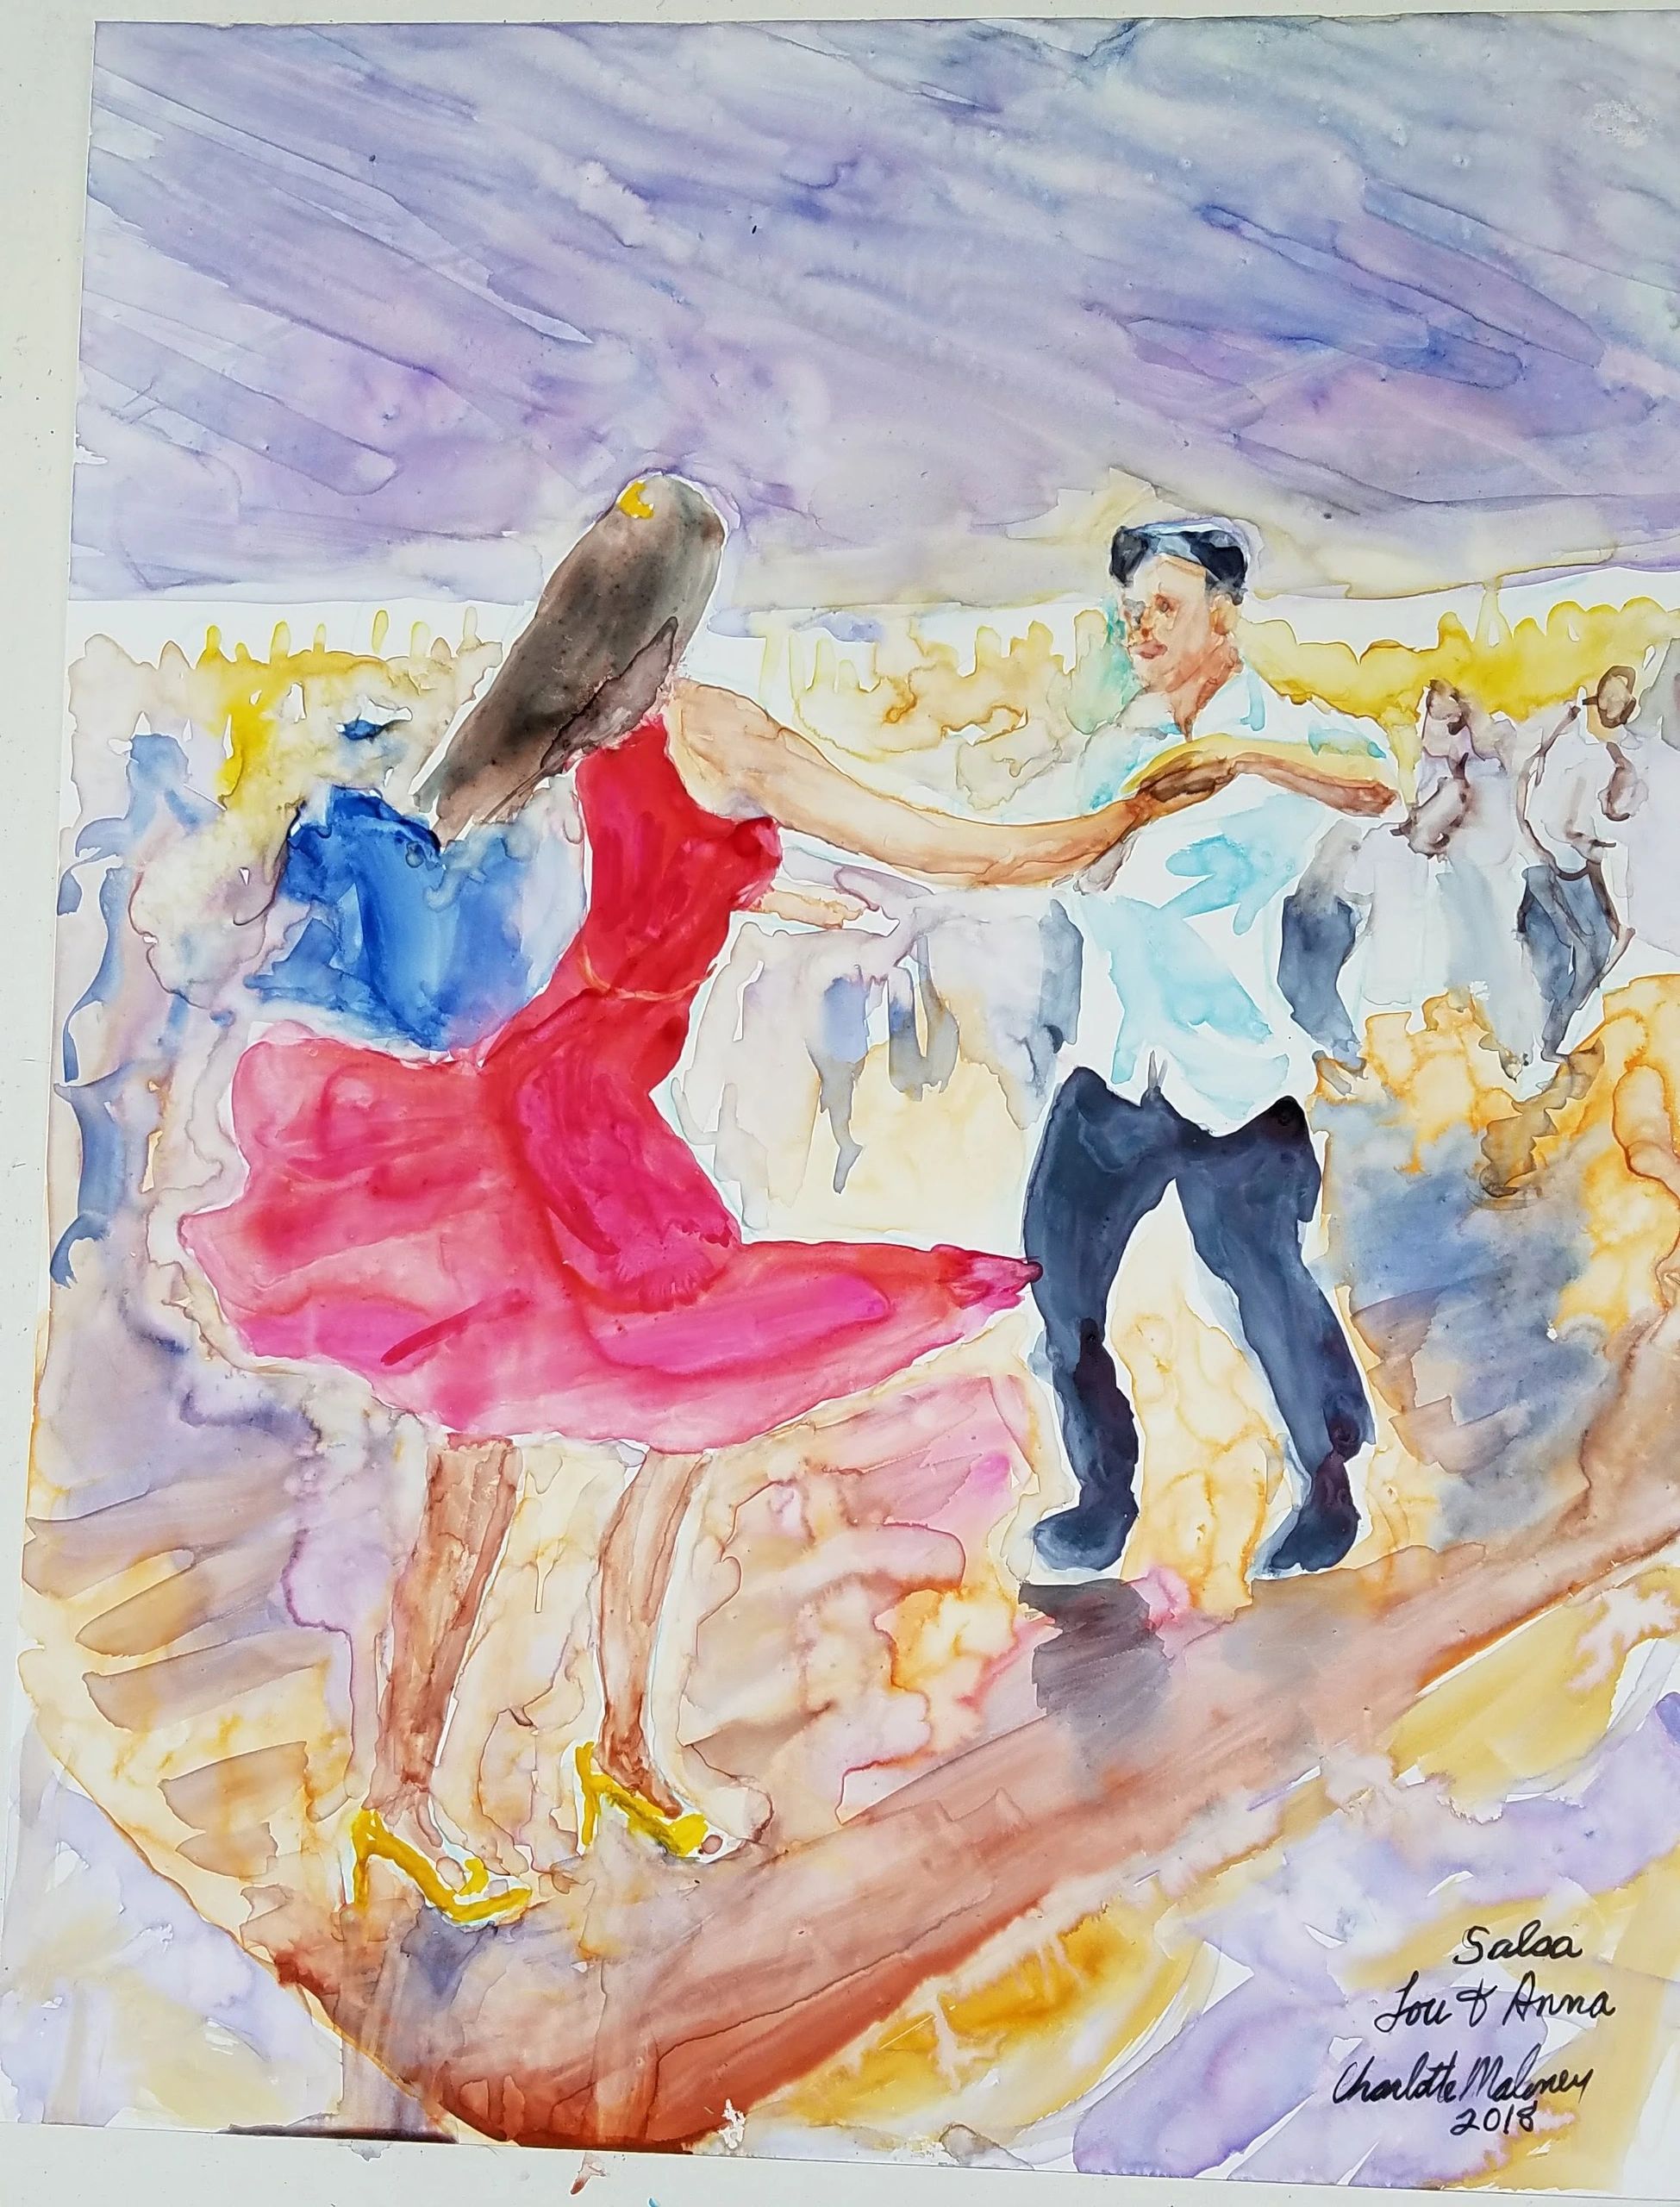 Title: dancers
Medium: Watercolor
Size: 11”w x15’h